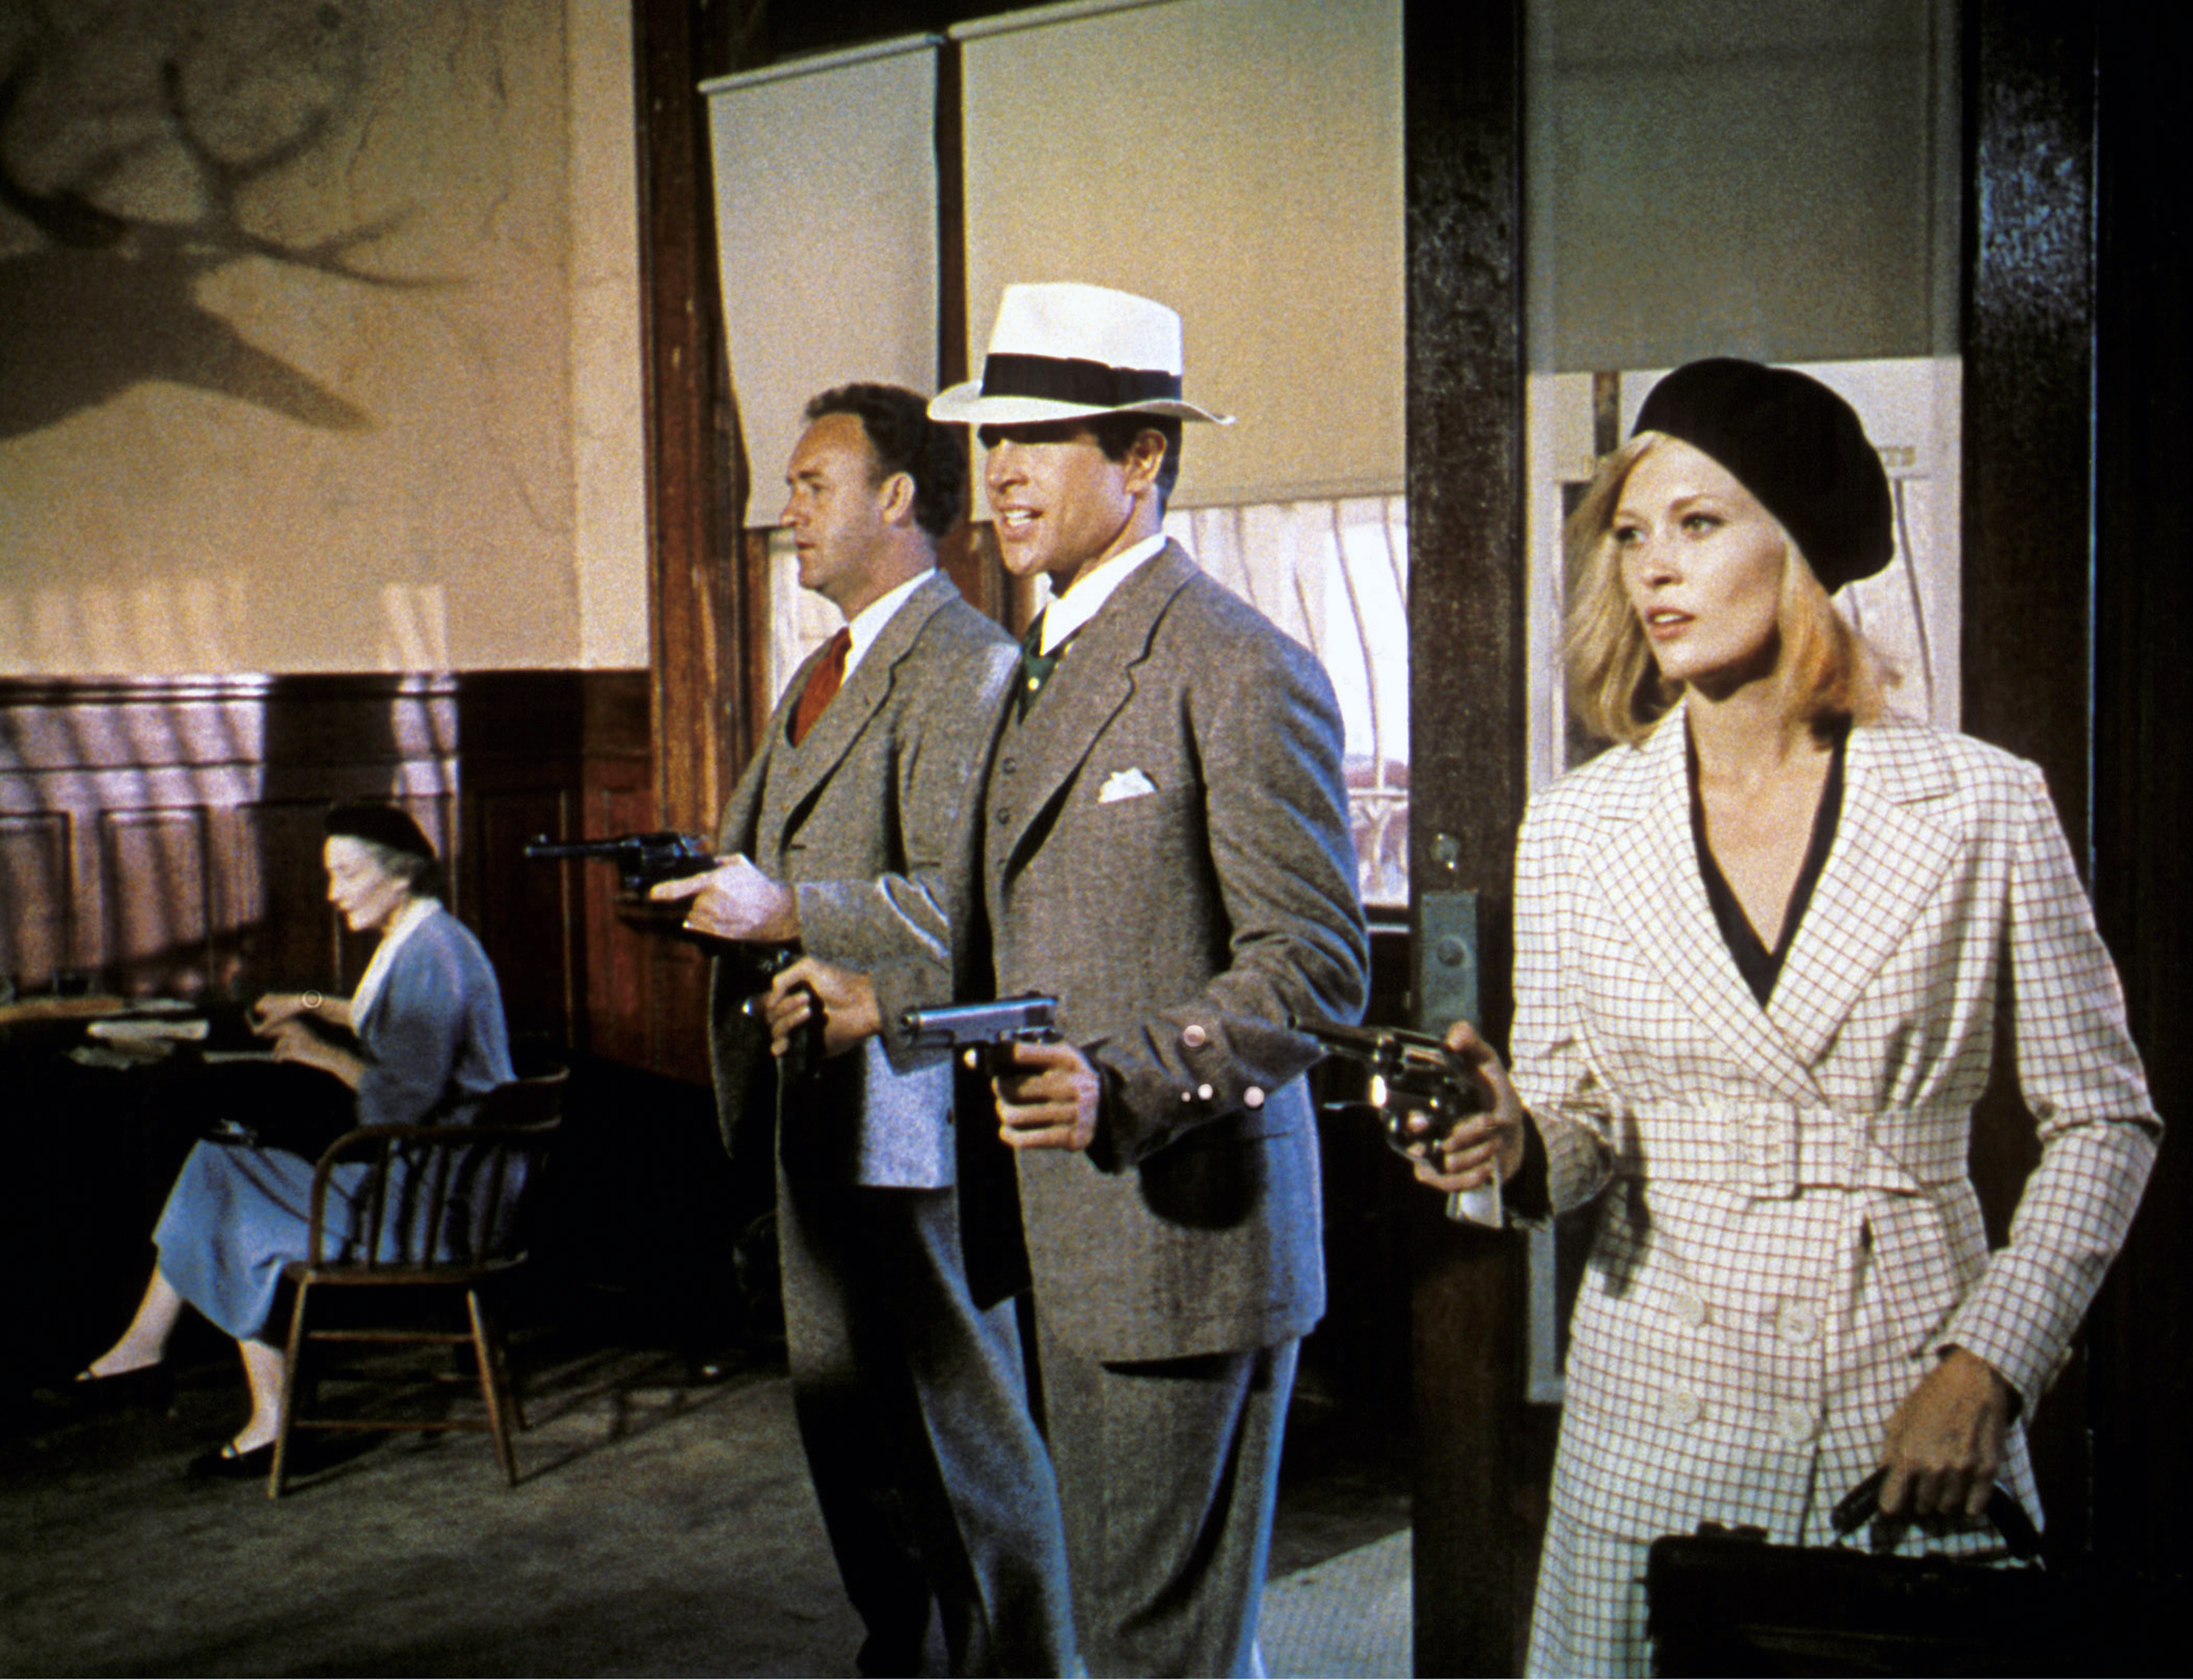 Los actores estadounidenses Gene Hackman, Warren Beatty y Faye Dunaway en el rodaje de "Bonnie and Clyde" | Fuente: Getty Images